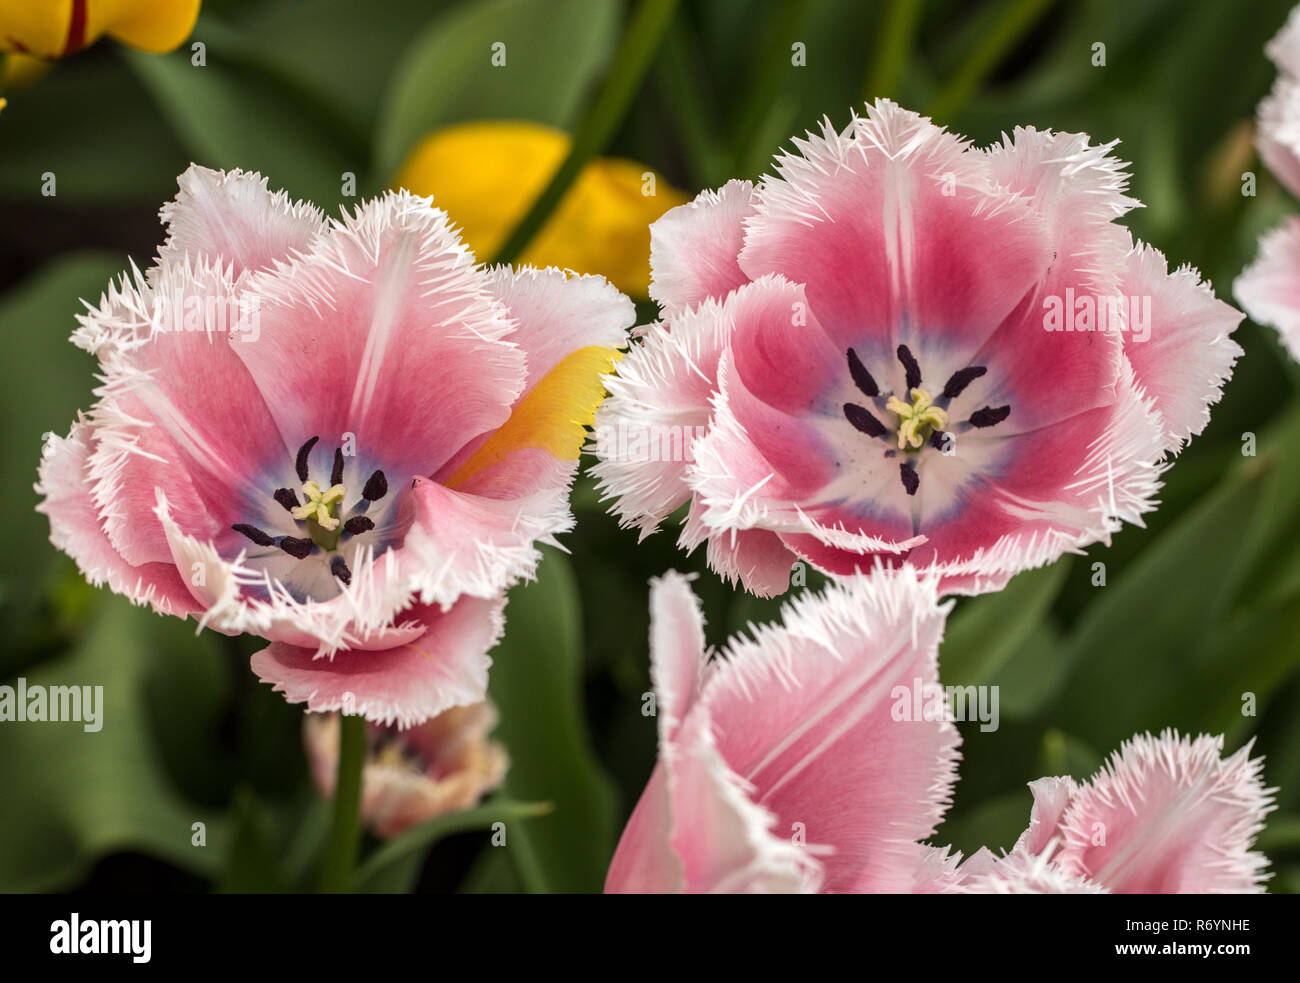 Tulipes frangées fleurir dans un jardin. Tulipes frangées doivent leur nom à partir de la bordure effilochée distincts sur leurs pétales. Banque D'Images